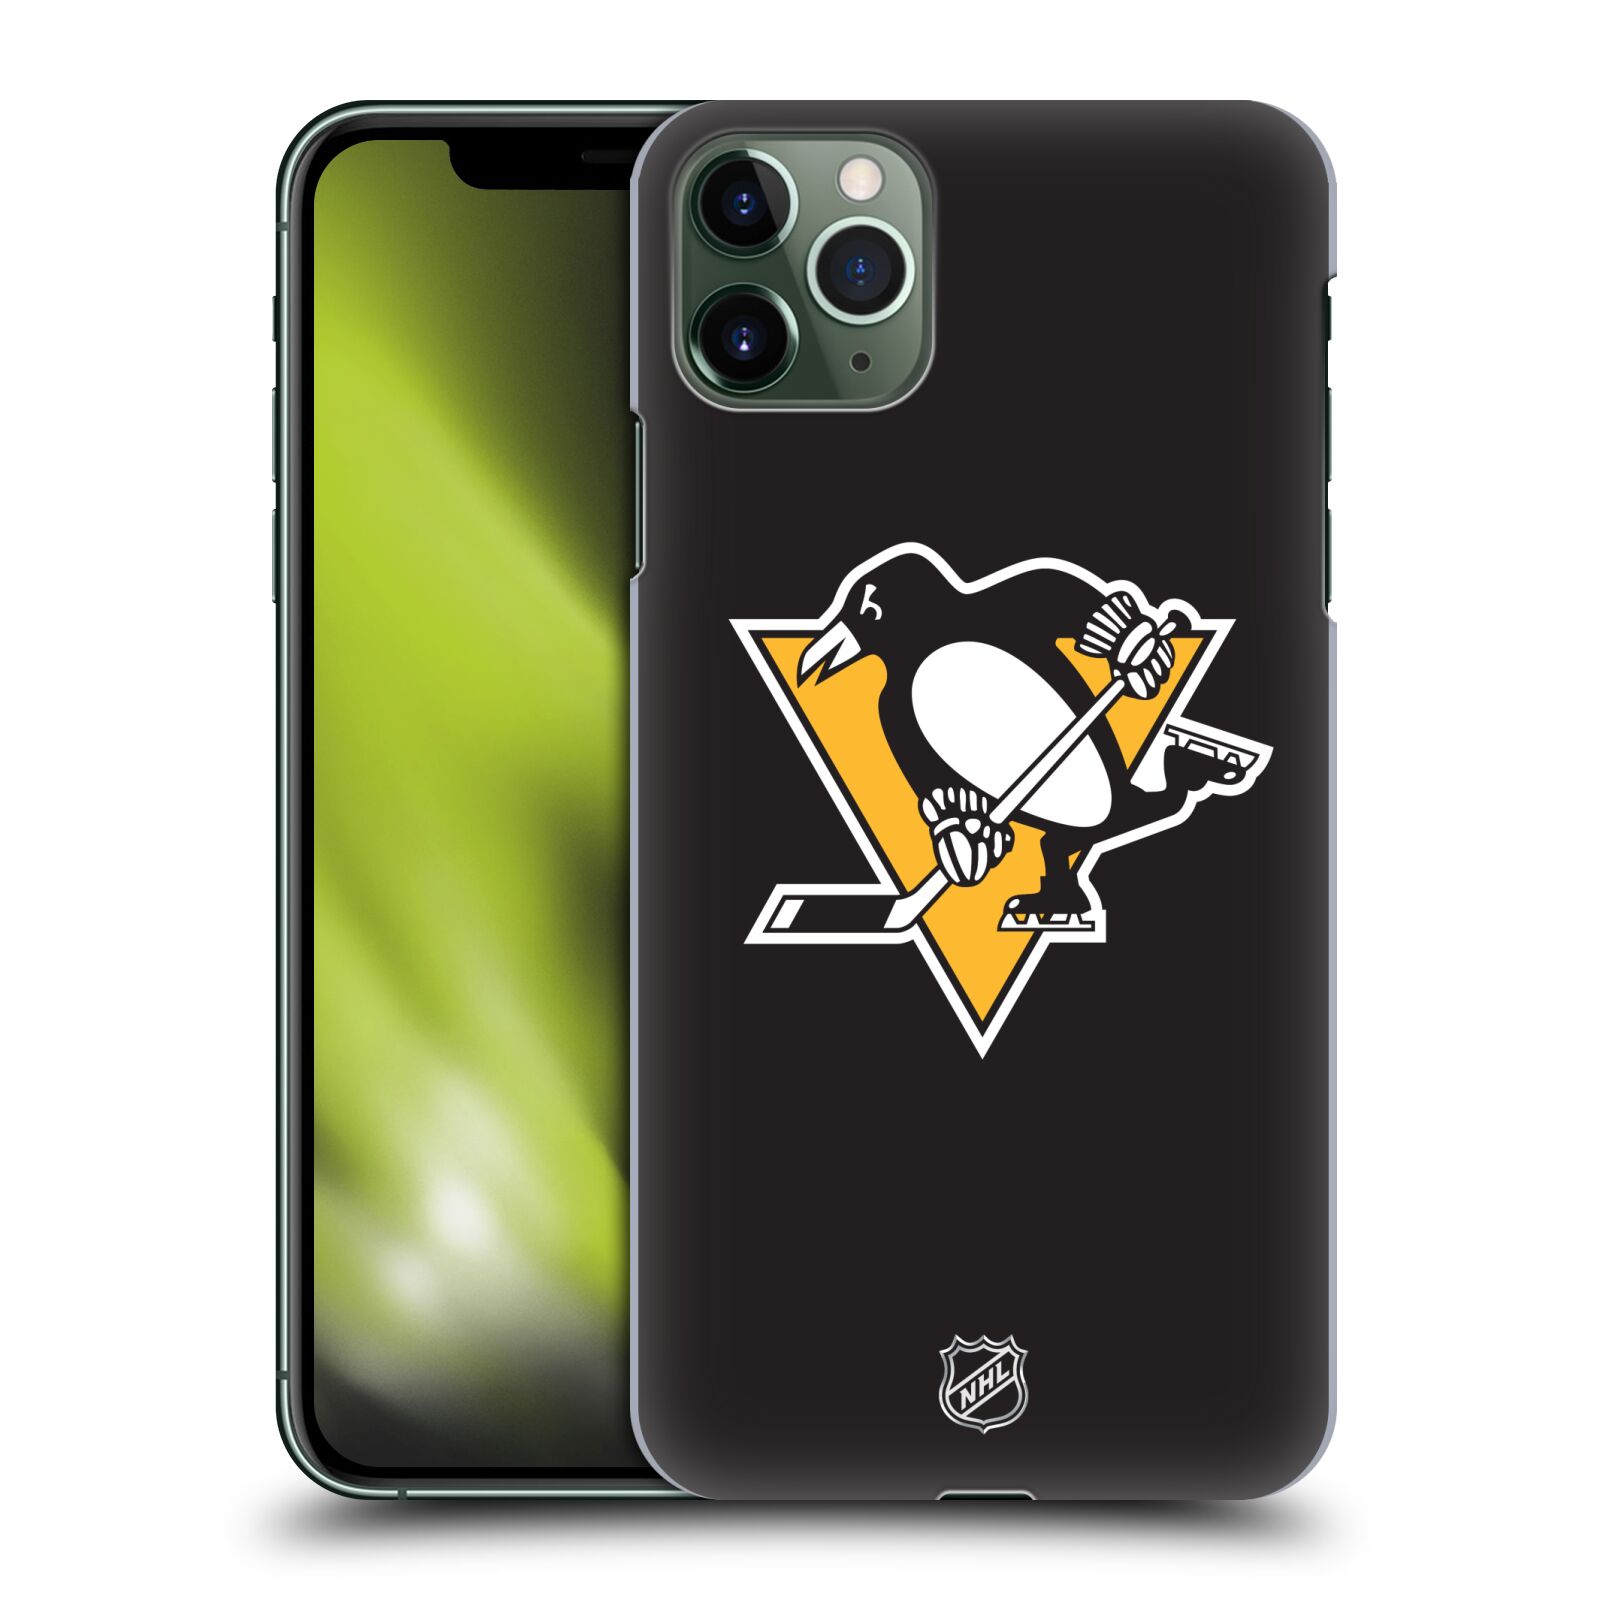 Pouzdro na mobil Apple Iphone 11 PRO MAX - HEAD CASE - Hokej NHL - Pittsburgh Penguins - černé pozadí znak